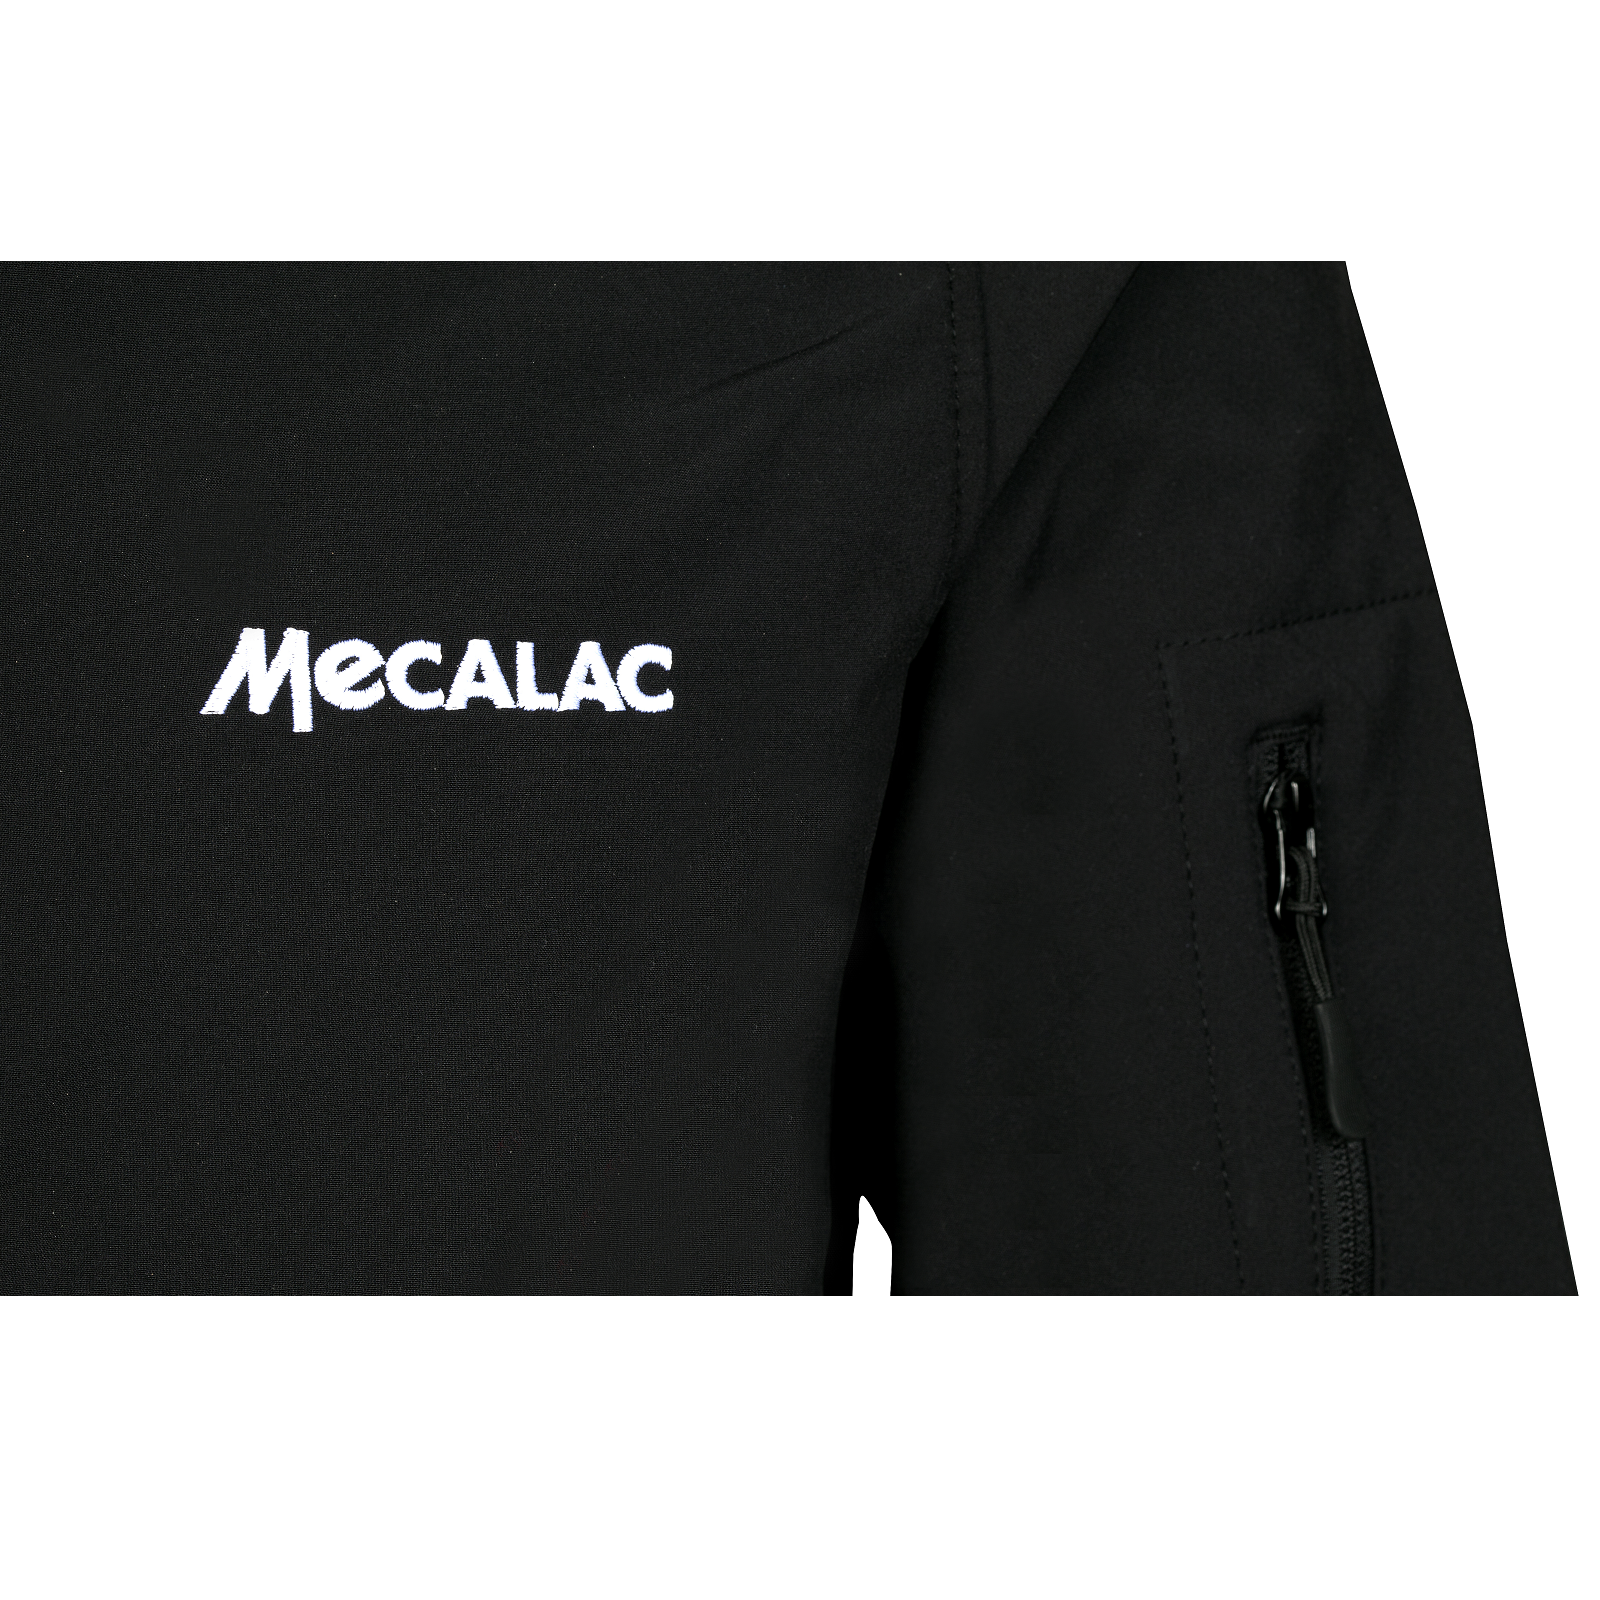 Mecalac Black softshell jacket - Jacket